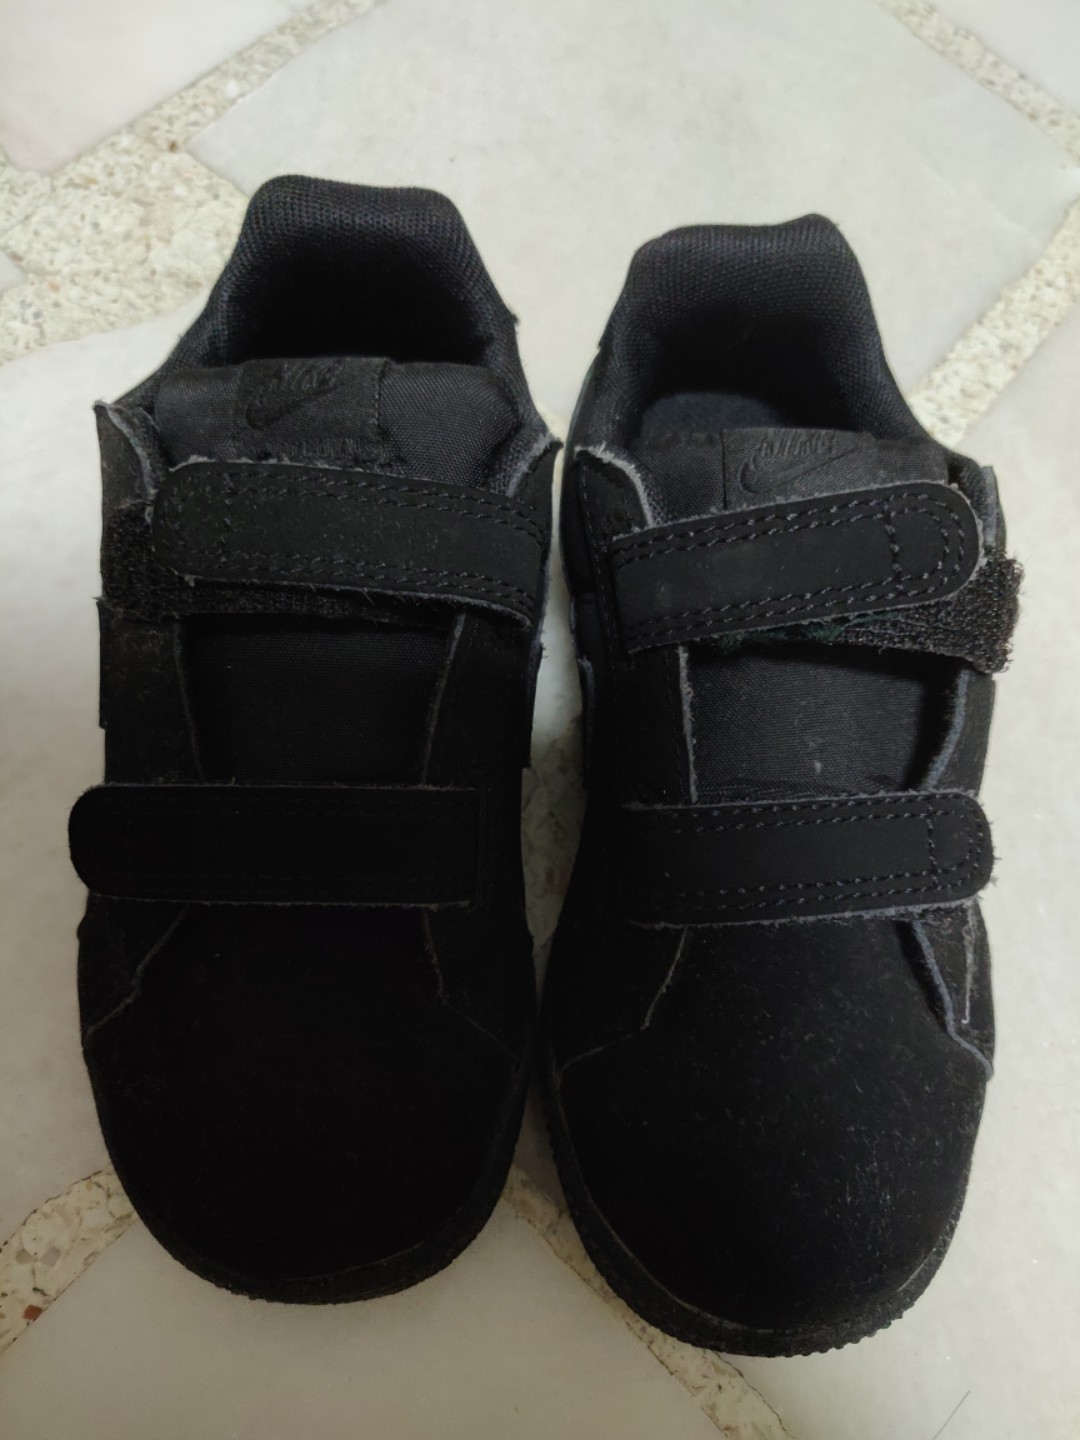 black velcro shoes